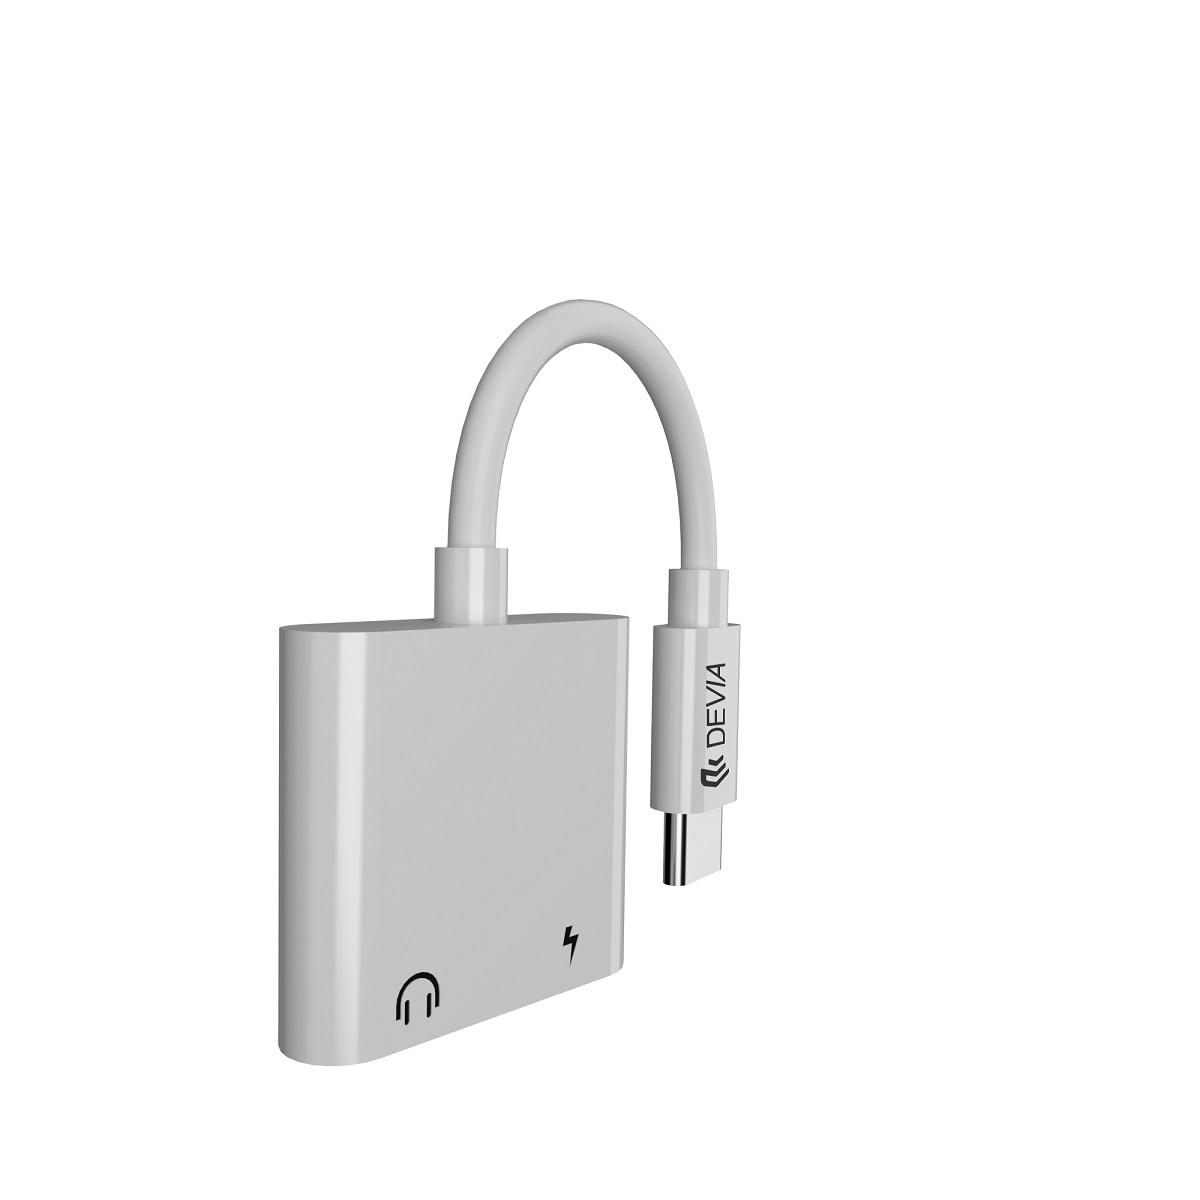 Devia adapter Smart USB-C - USB-C (port) + USB-C (port) biay / 2